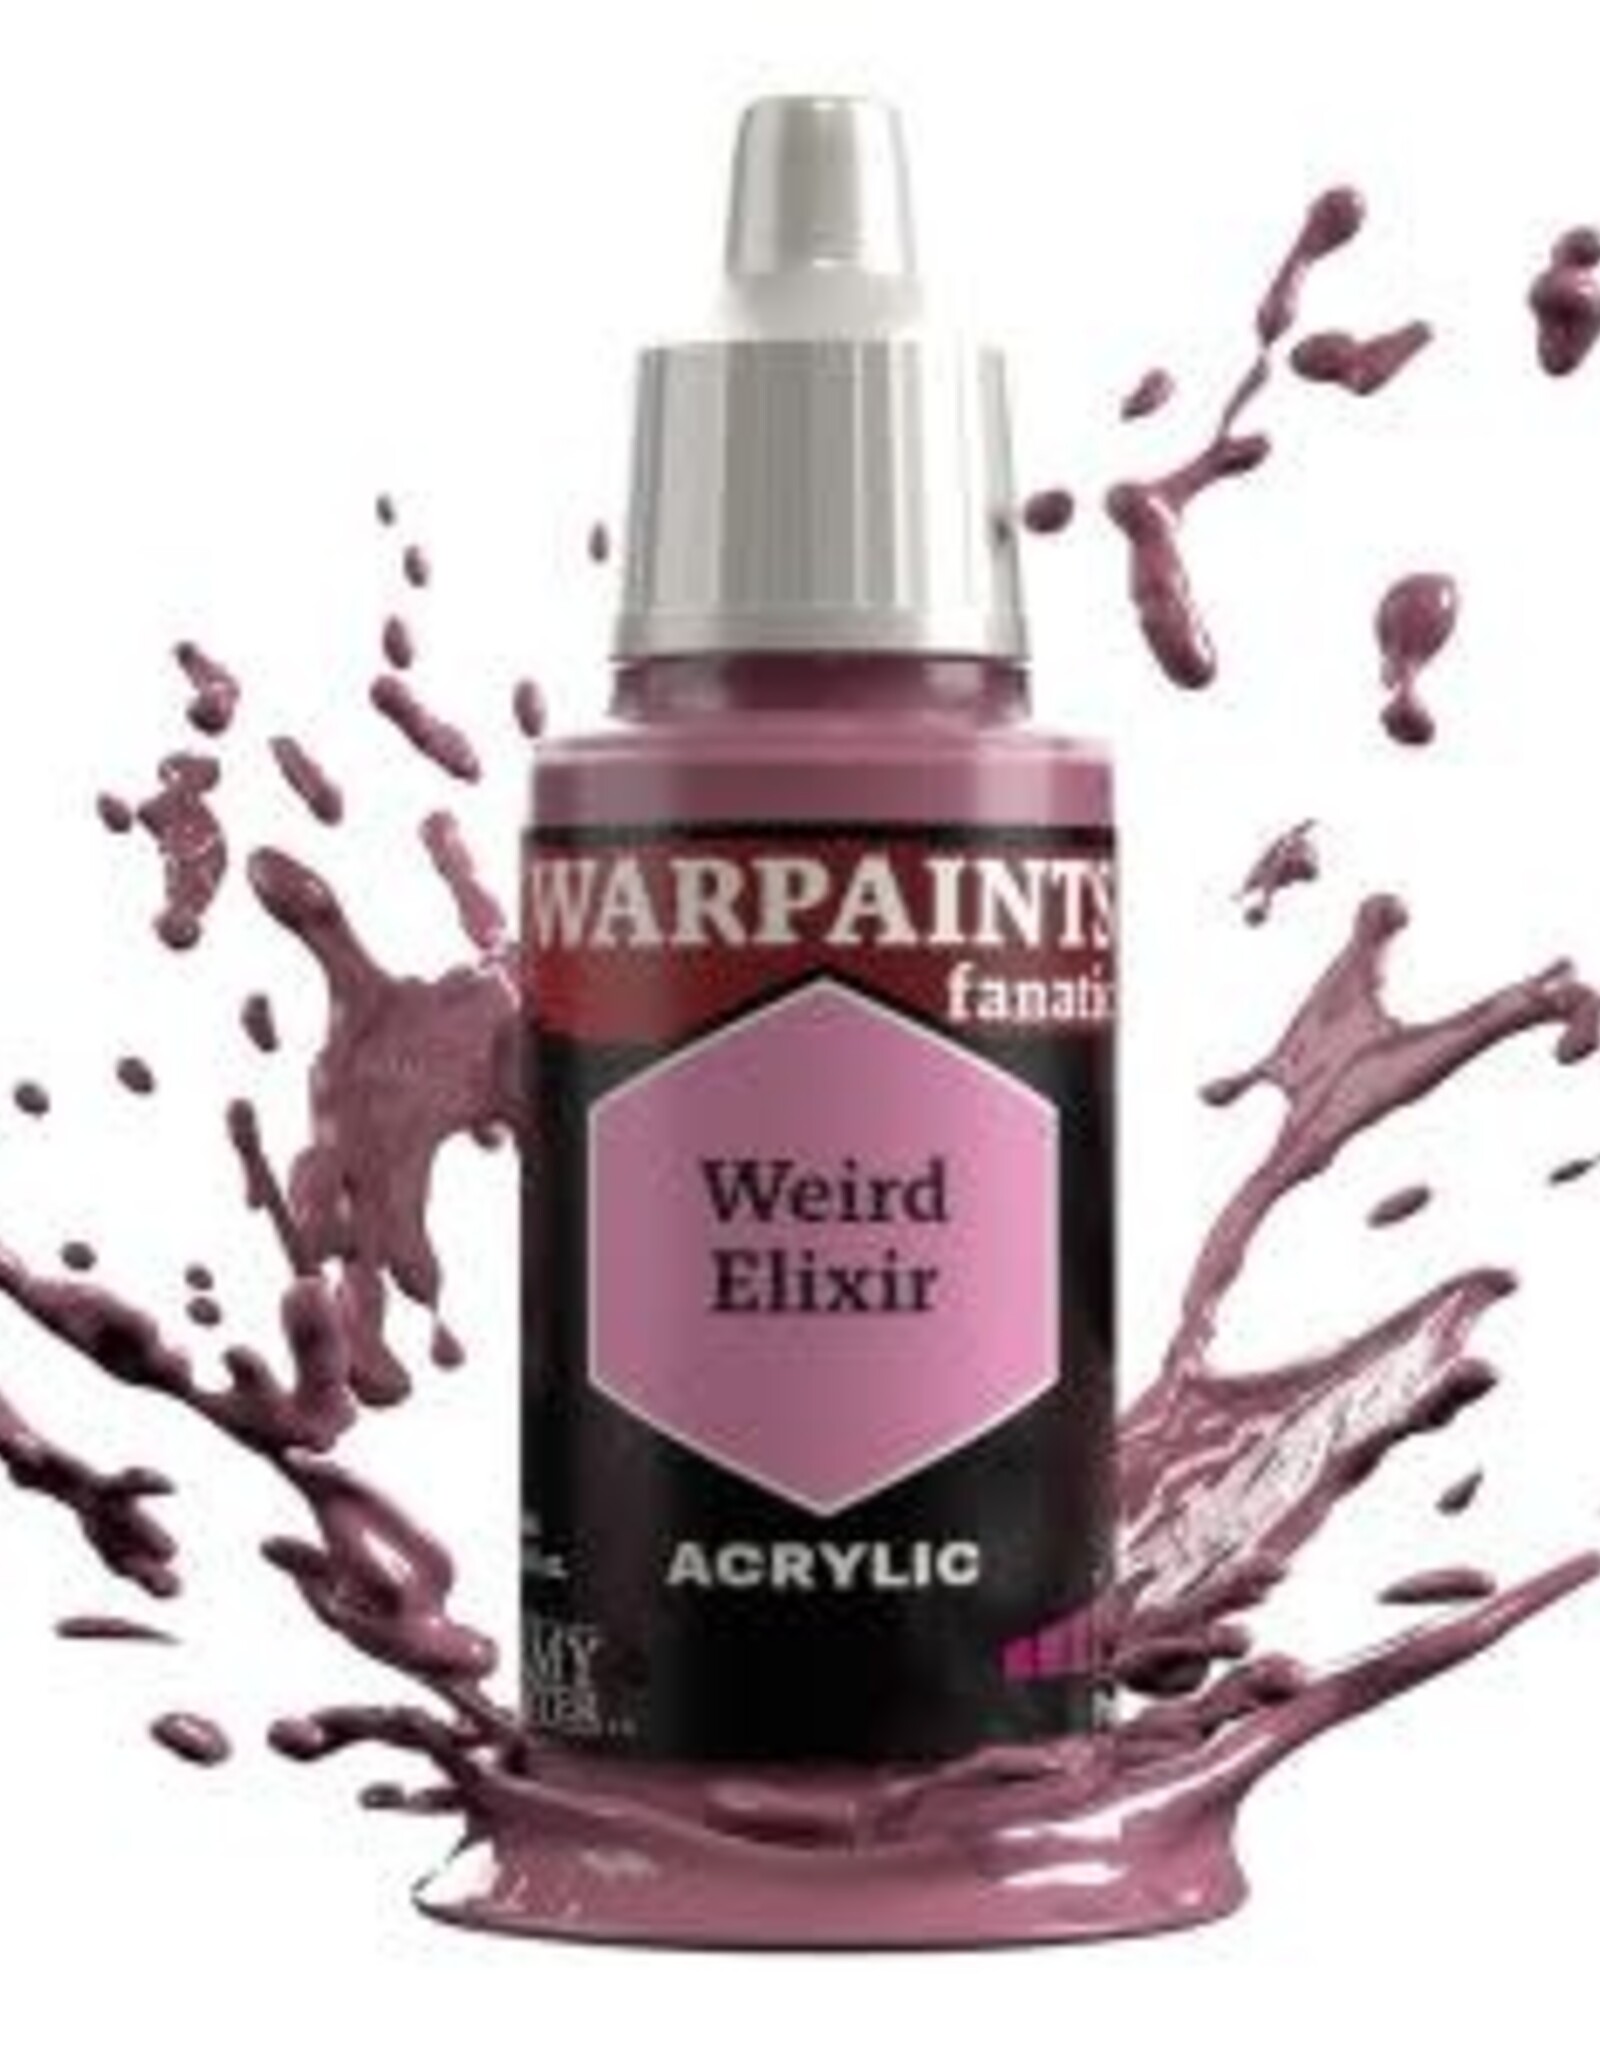 Warpaints Fanatic: Weird Elixir